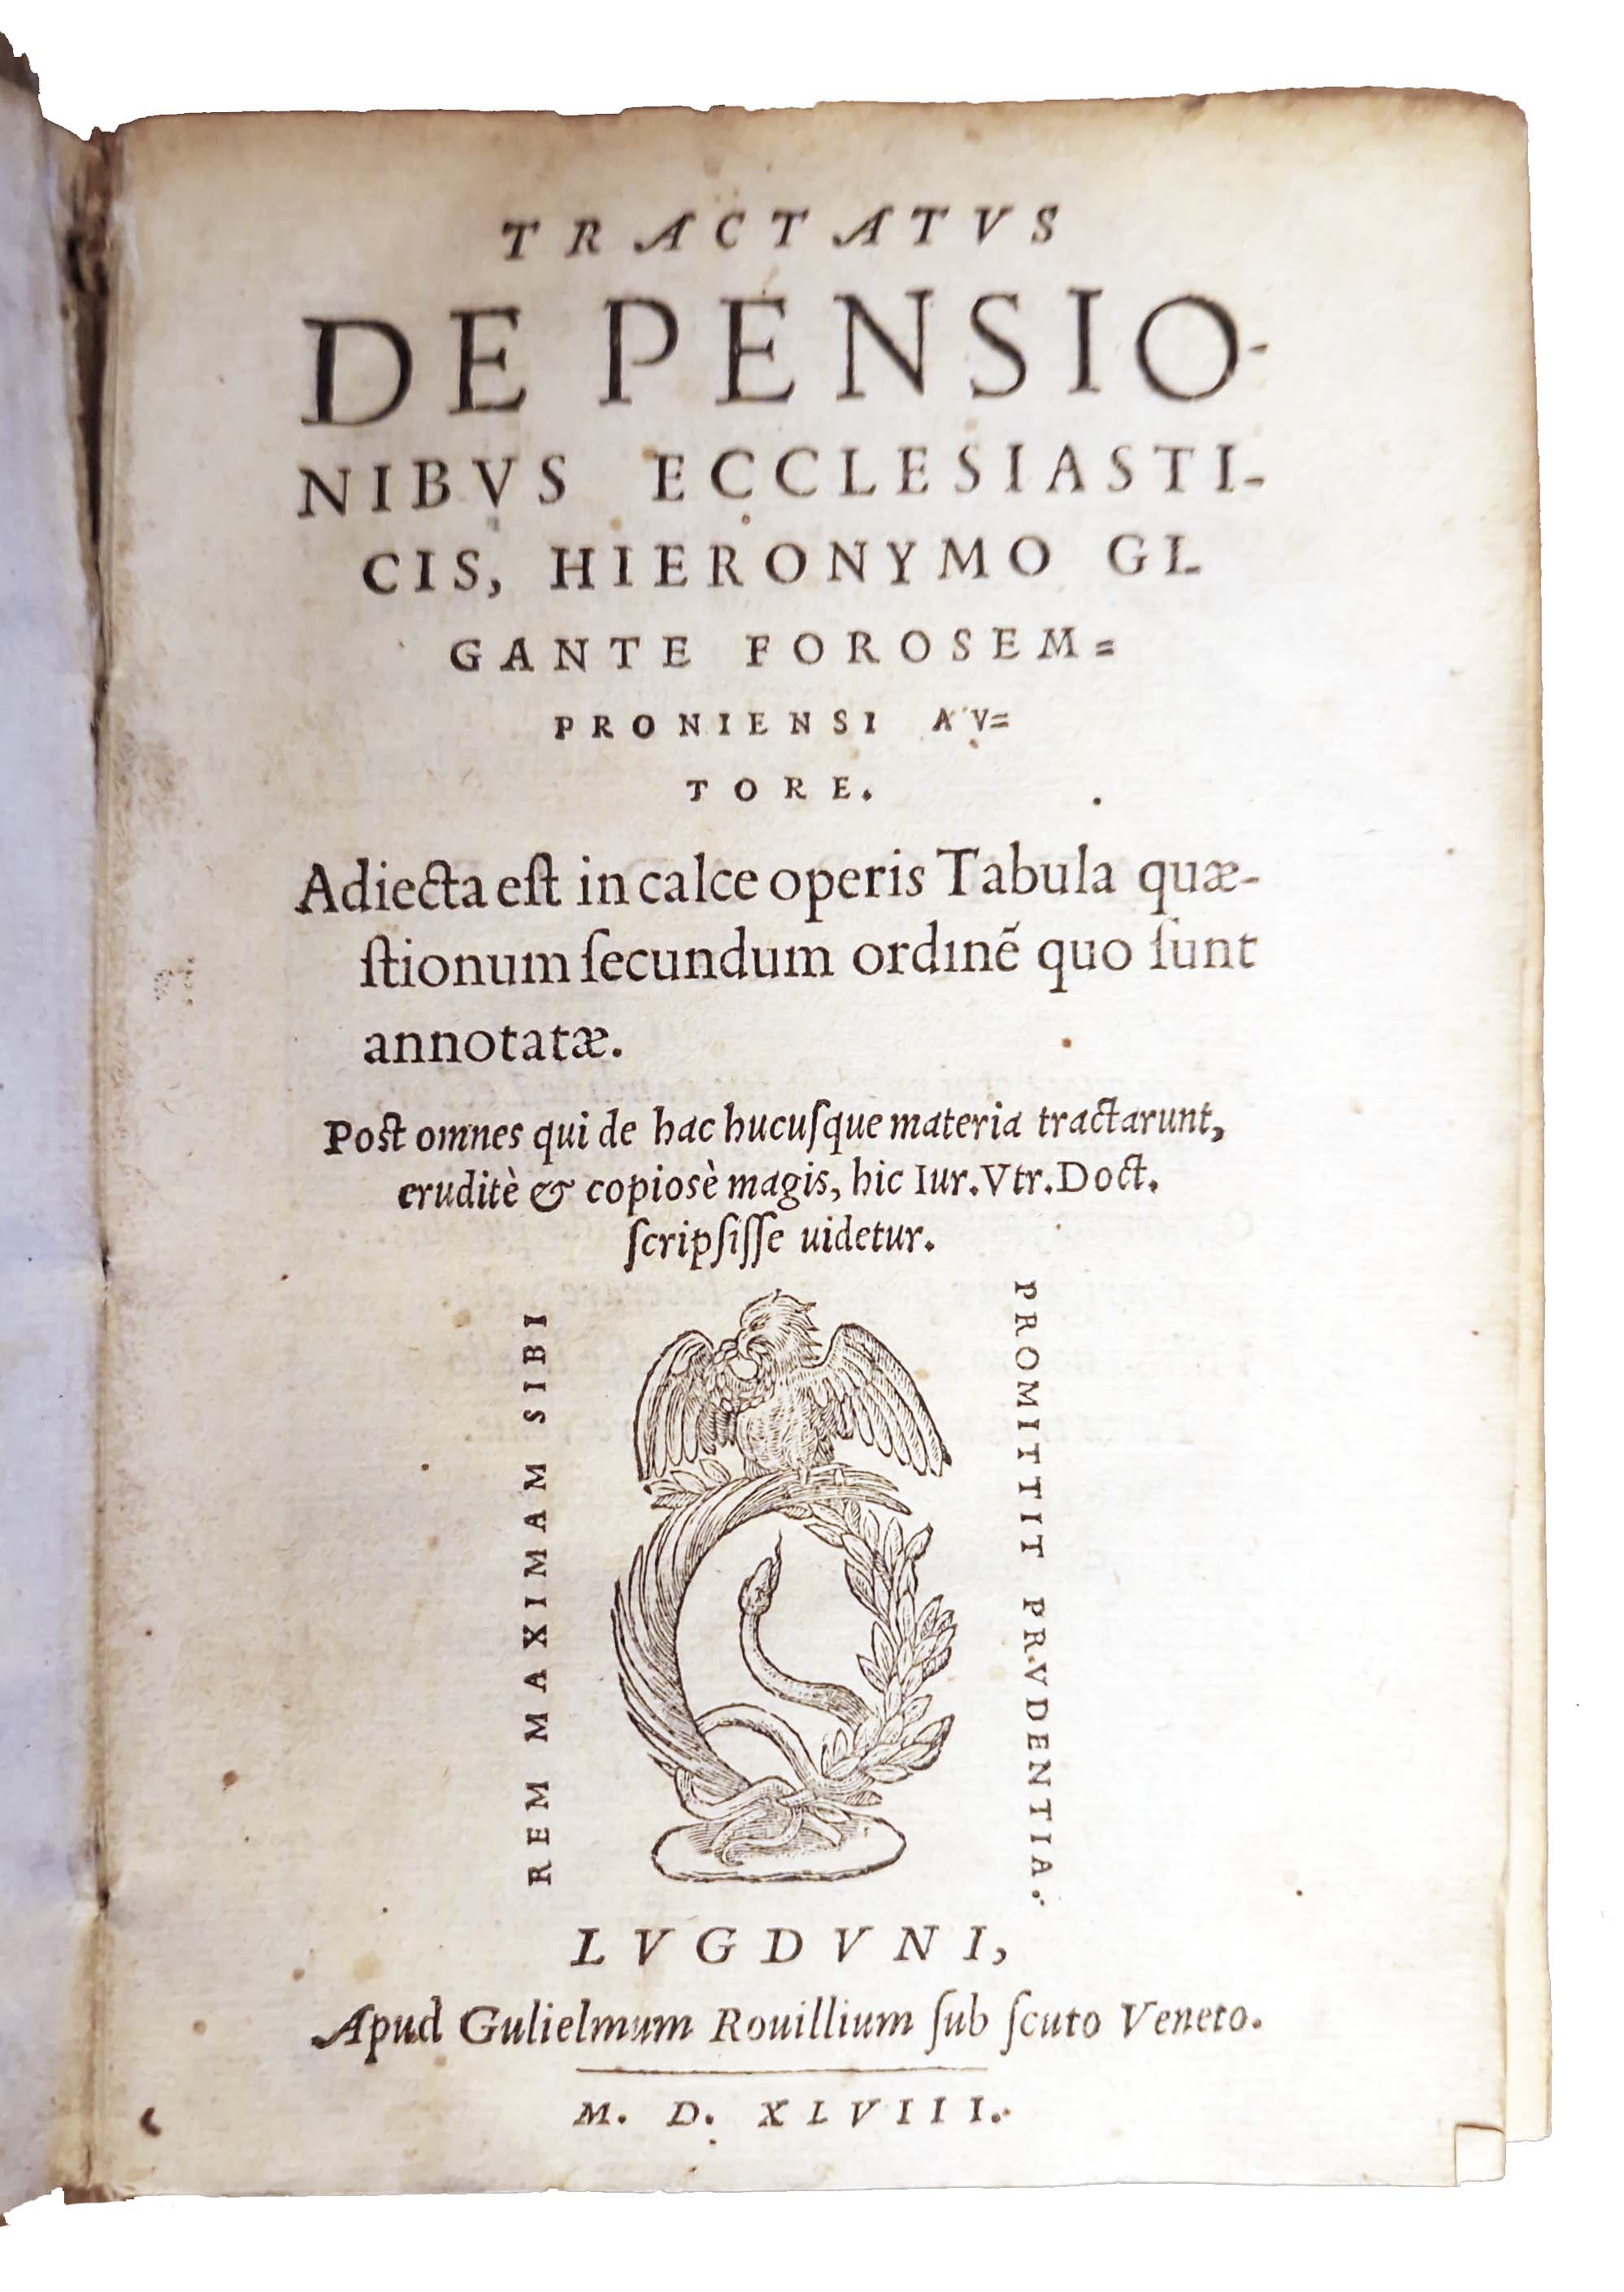 Tractatus de pensionibus ecclesiasticis, Hieronymo Gygante Forosemproniensi authore. Adiecta est …